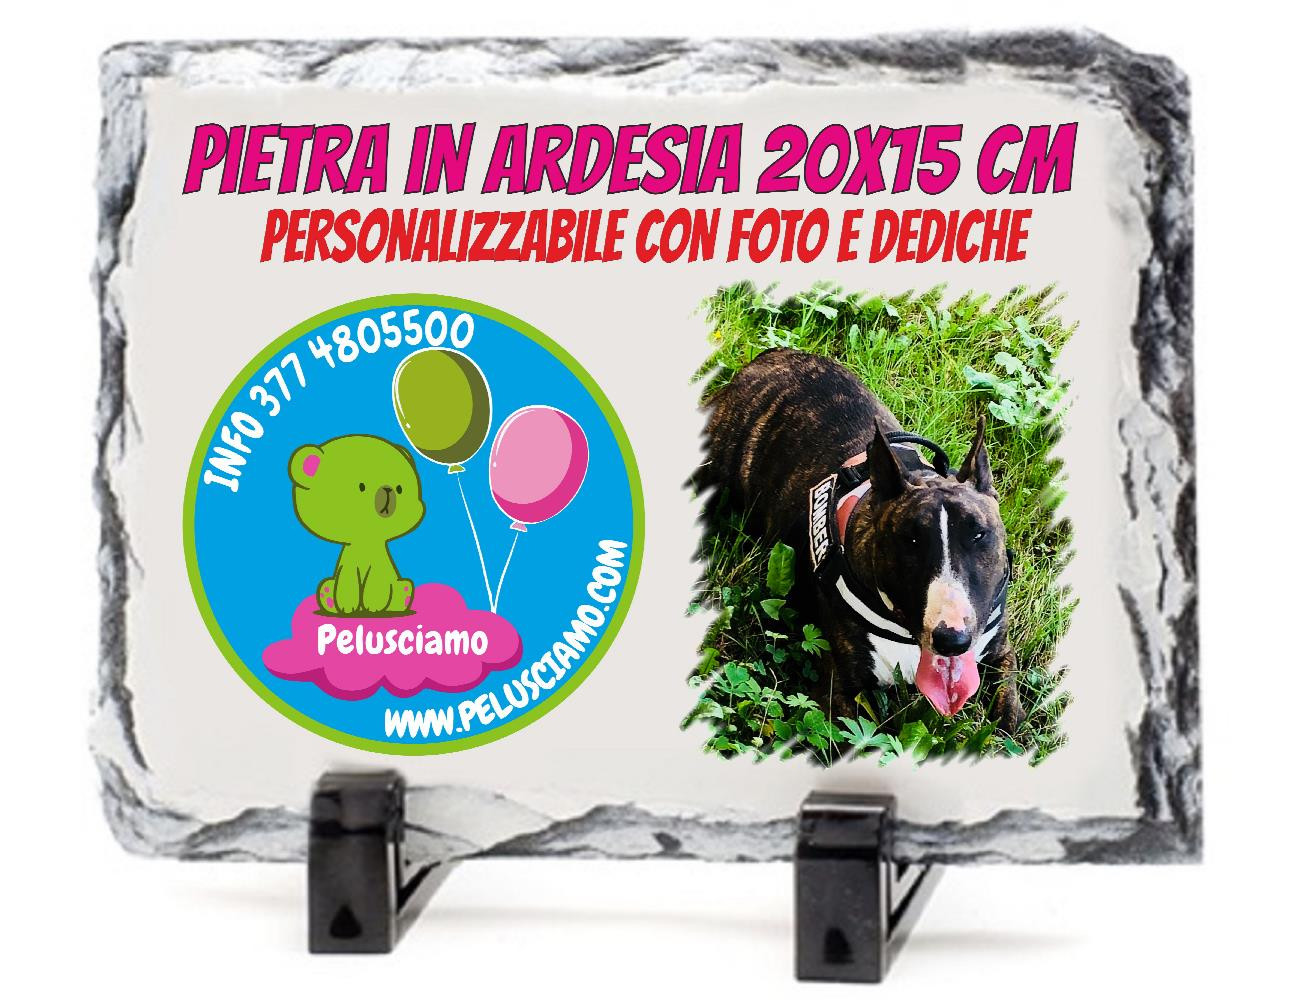 Cornice Pietra Ardesia Personalizzabile 15x20 cm Gadget Personalizzato PS 14980 